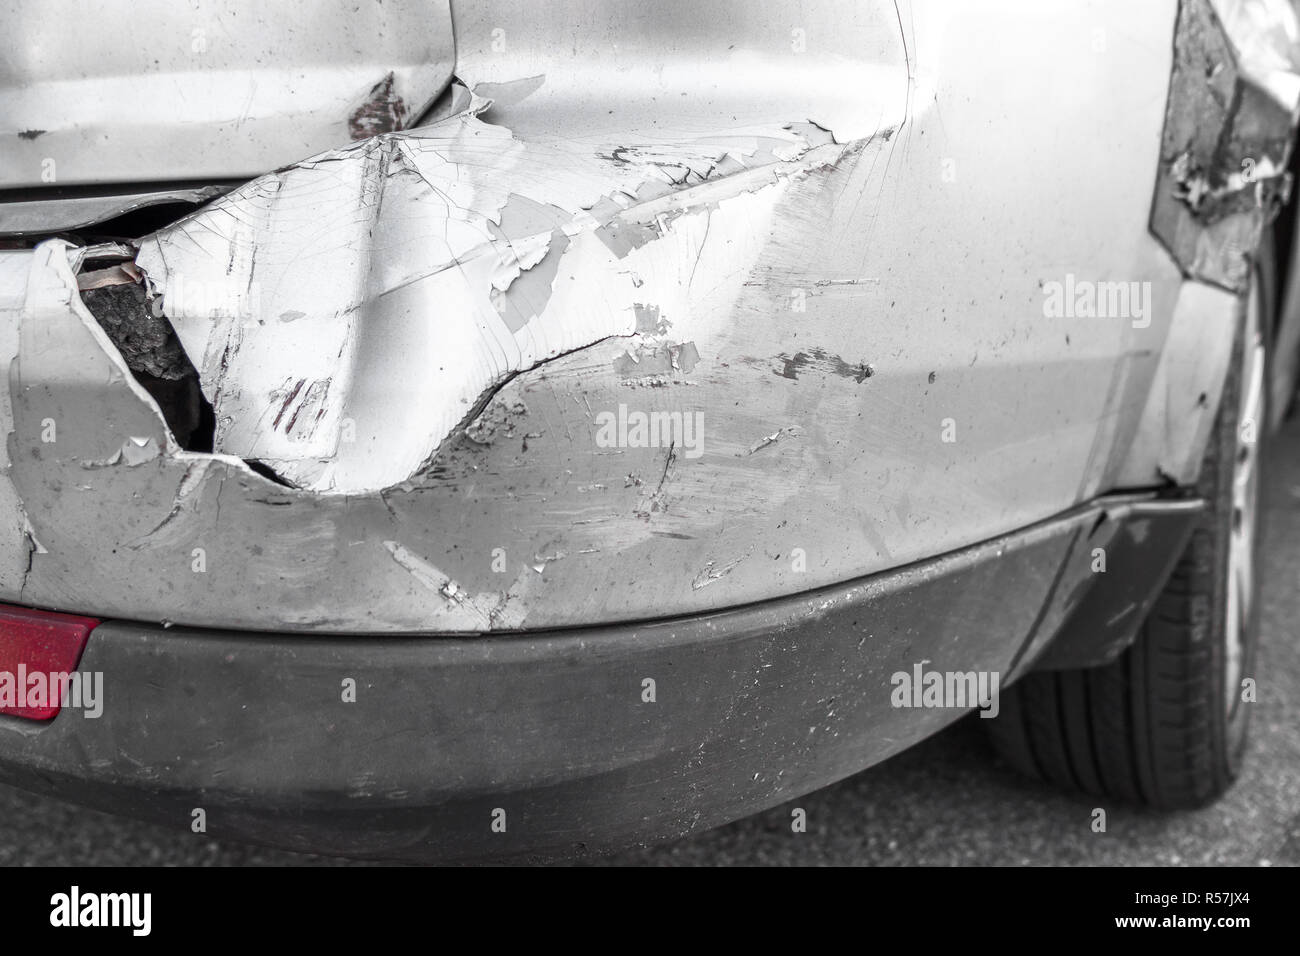 Le pare-chocs arrière de la voiture a été endommagé après un accident.  Retrait de la carrosserie automatique Photo Stock - Alamy